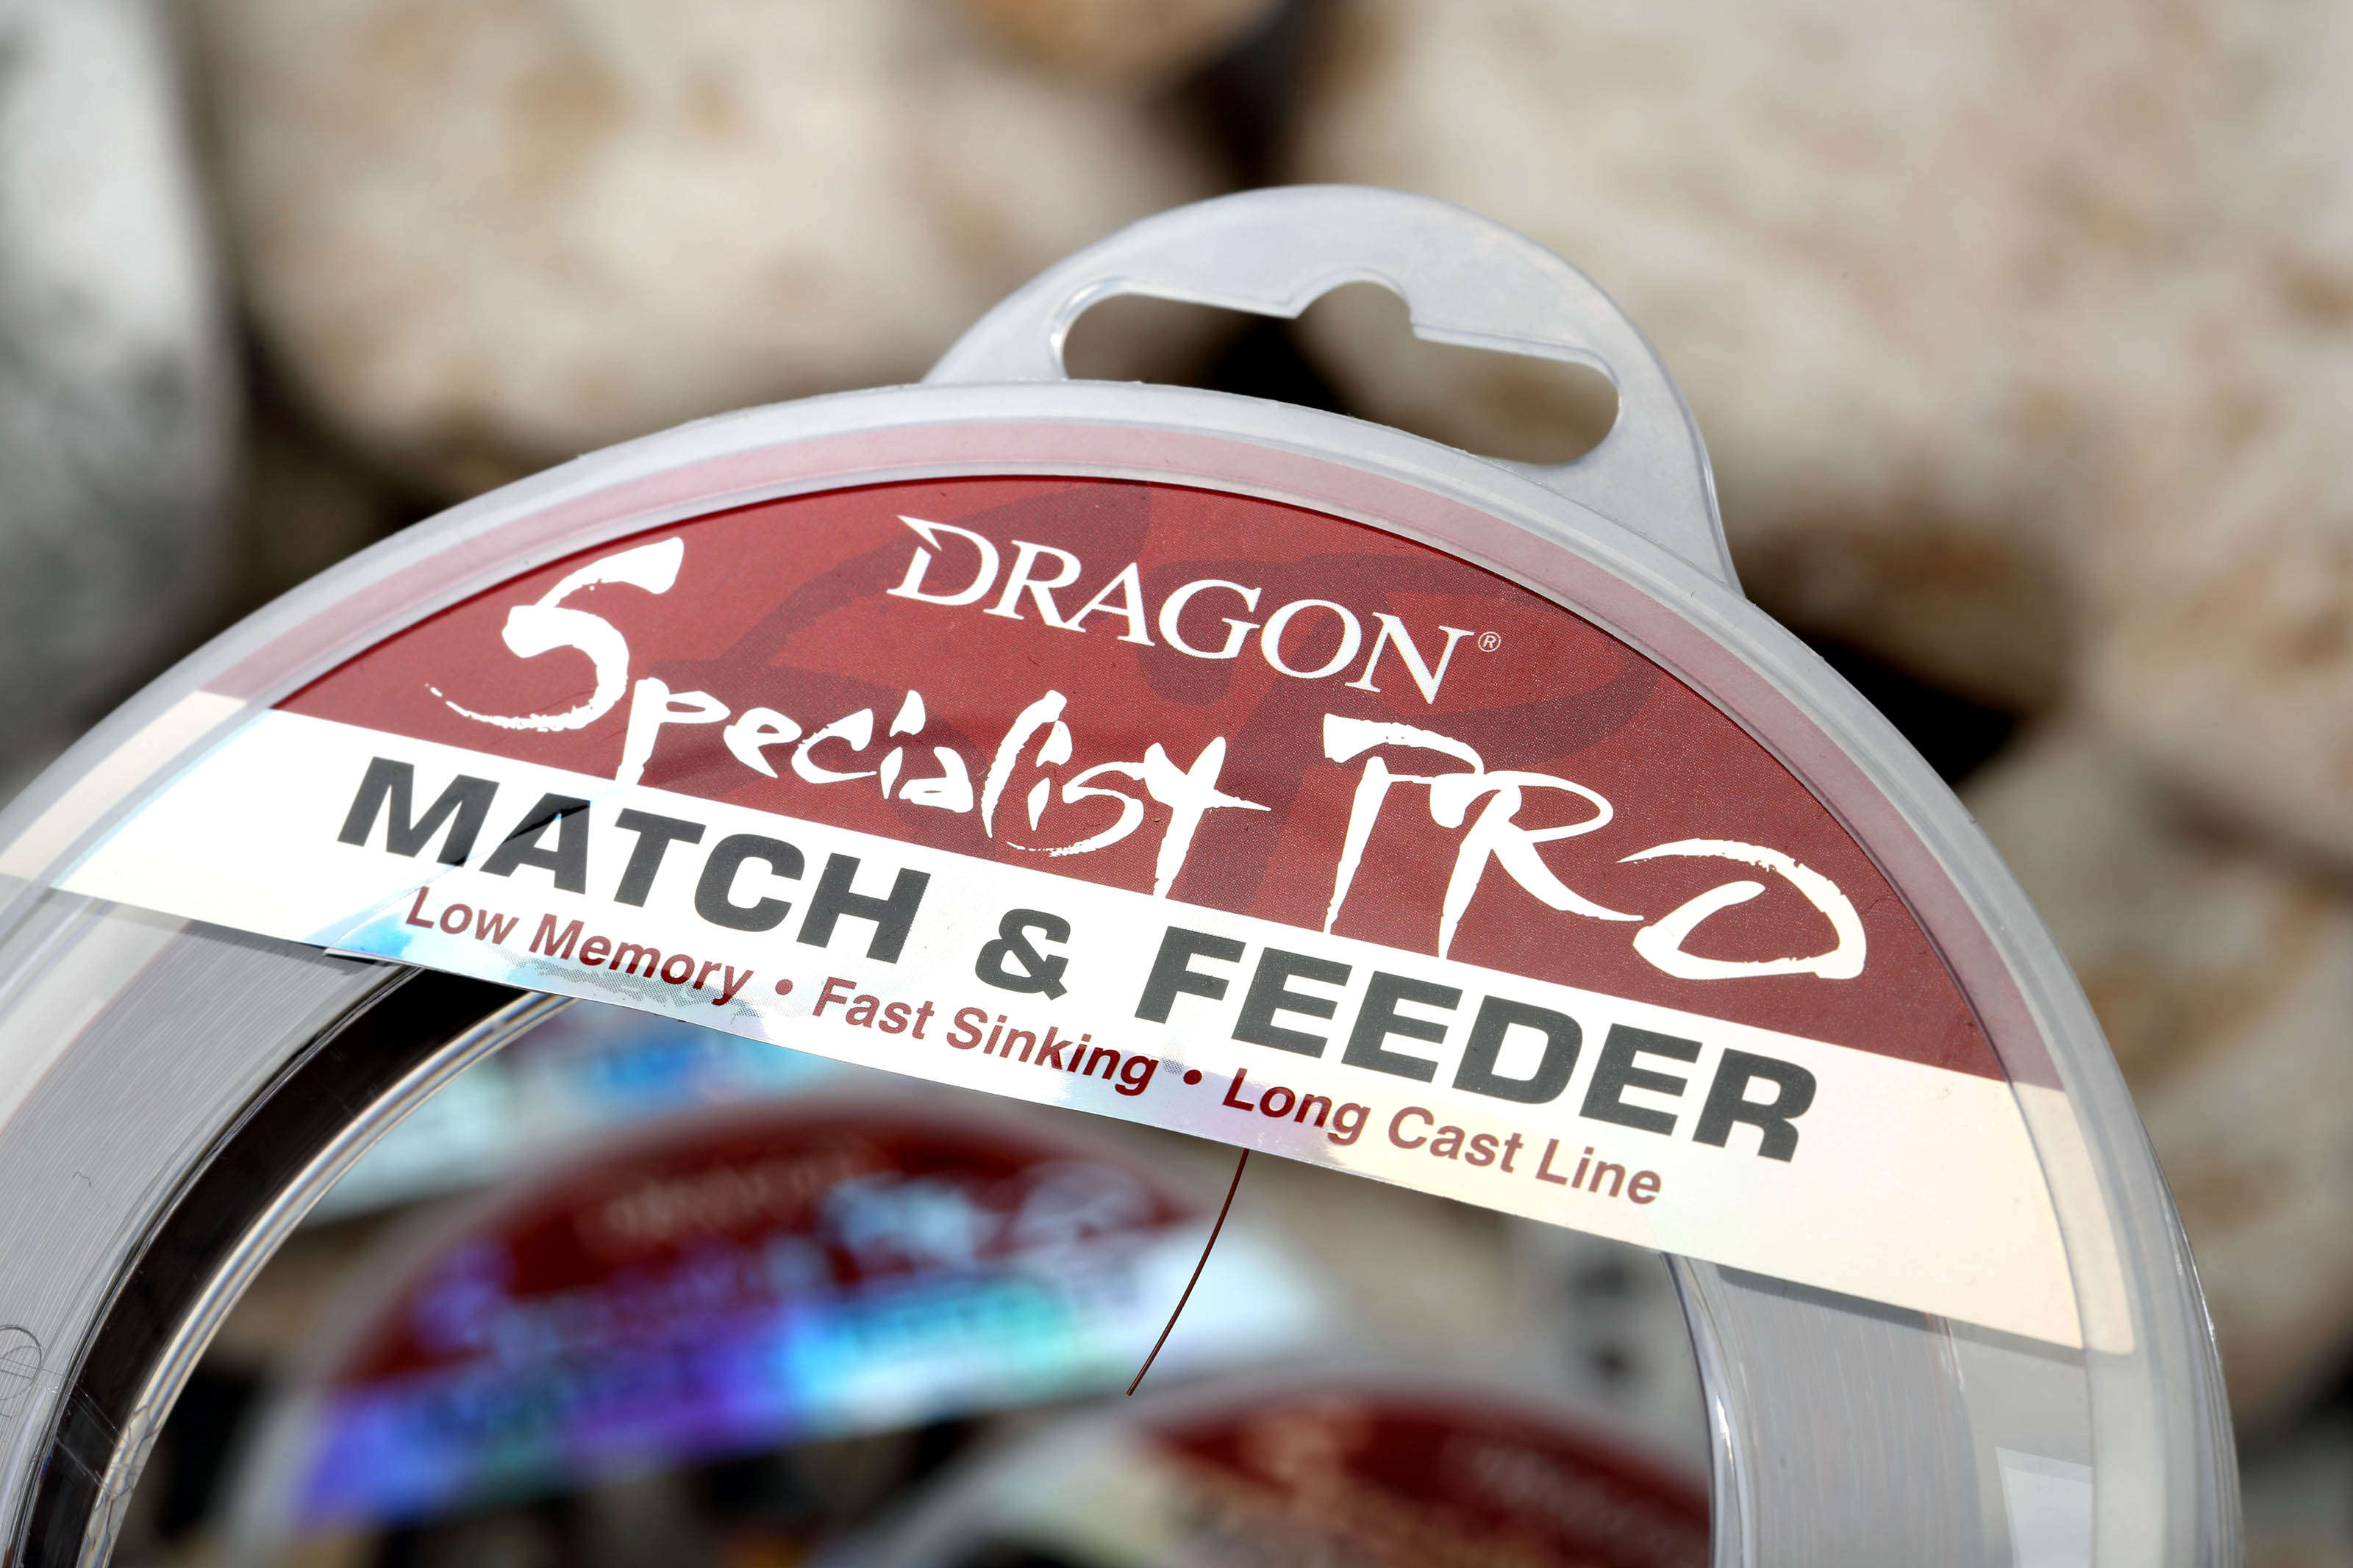 Dragon Specialist Pro Match & Feeder 300m 